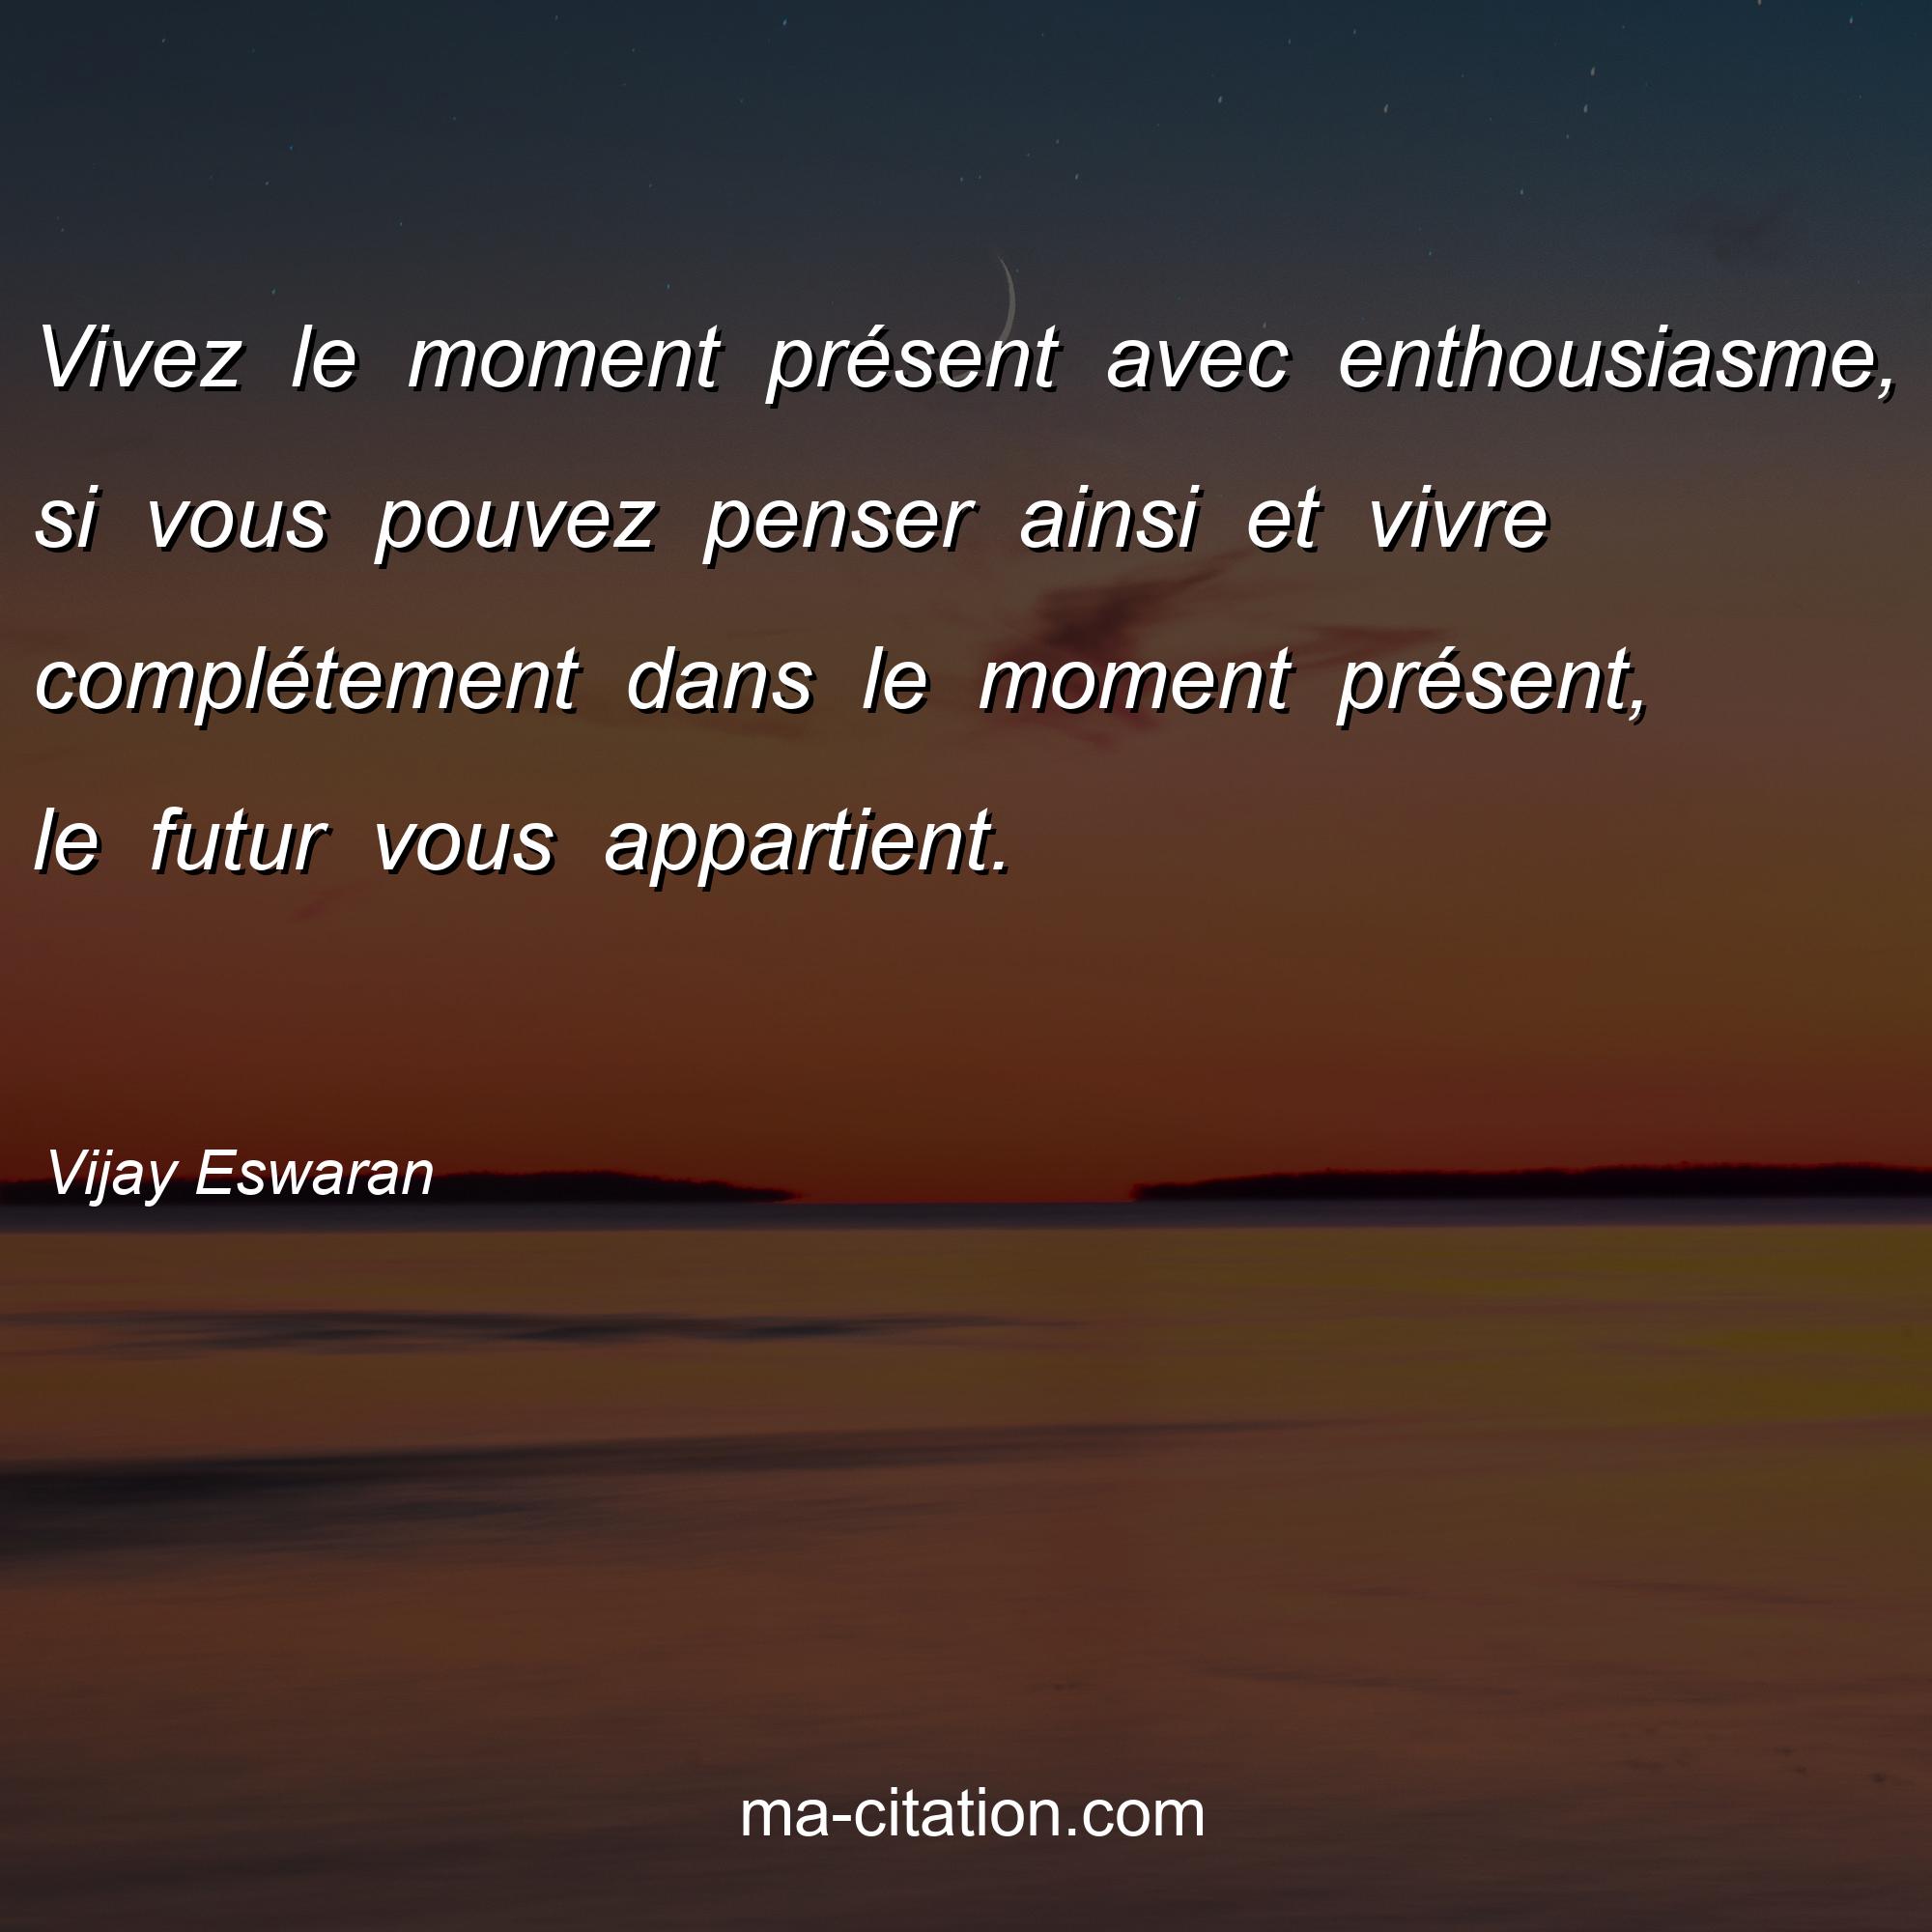 Vijay Eswaran : Vivez le moment présent avec enthousiasme, si vous pouvez penser ainsi et vivre complétement dans le moment présent, le futur vous appartient. 